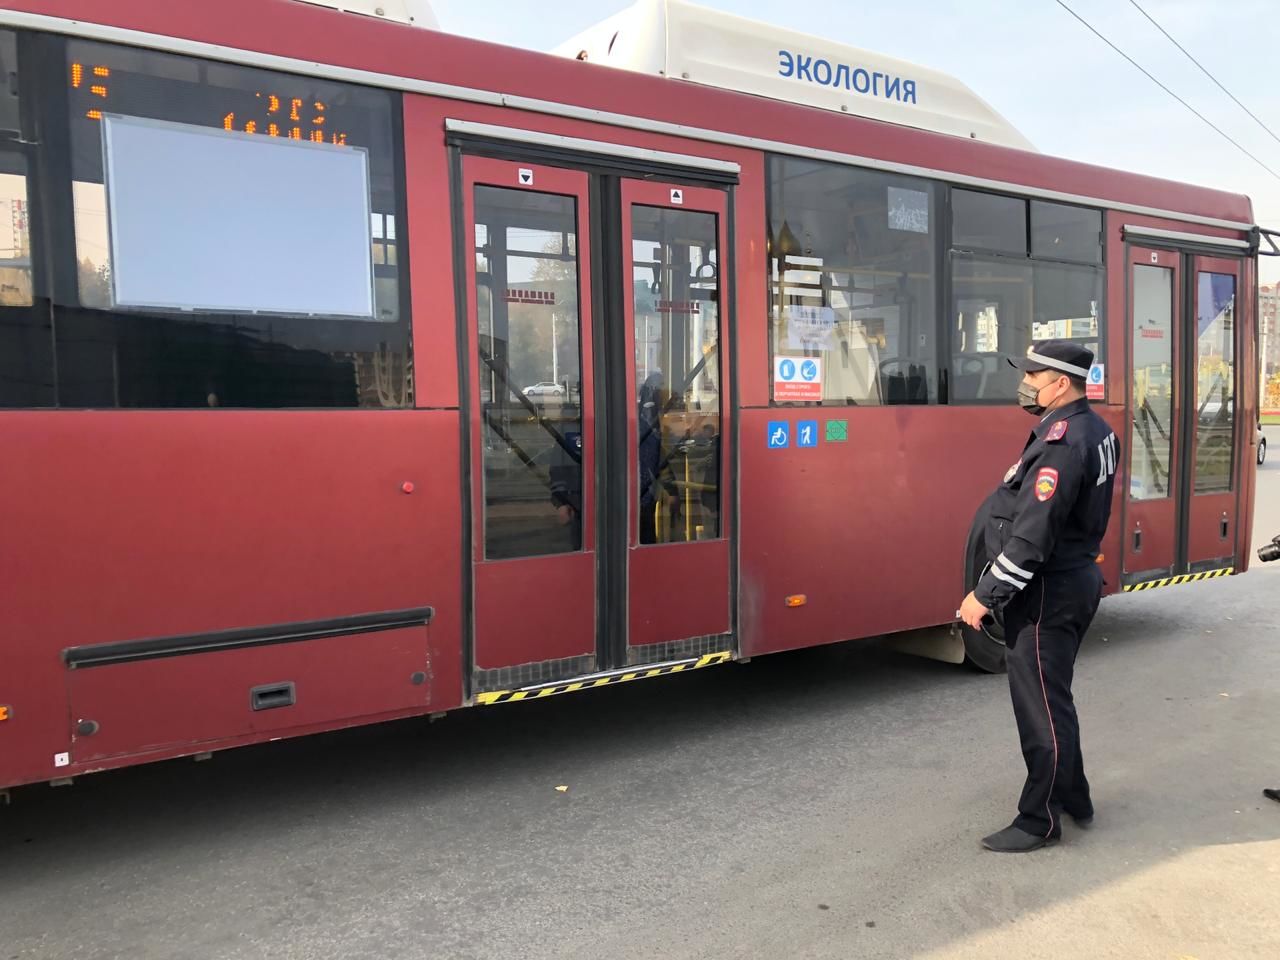 35 пассажиров без масок пытались проехать в городском транспорте Казани